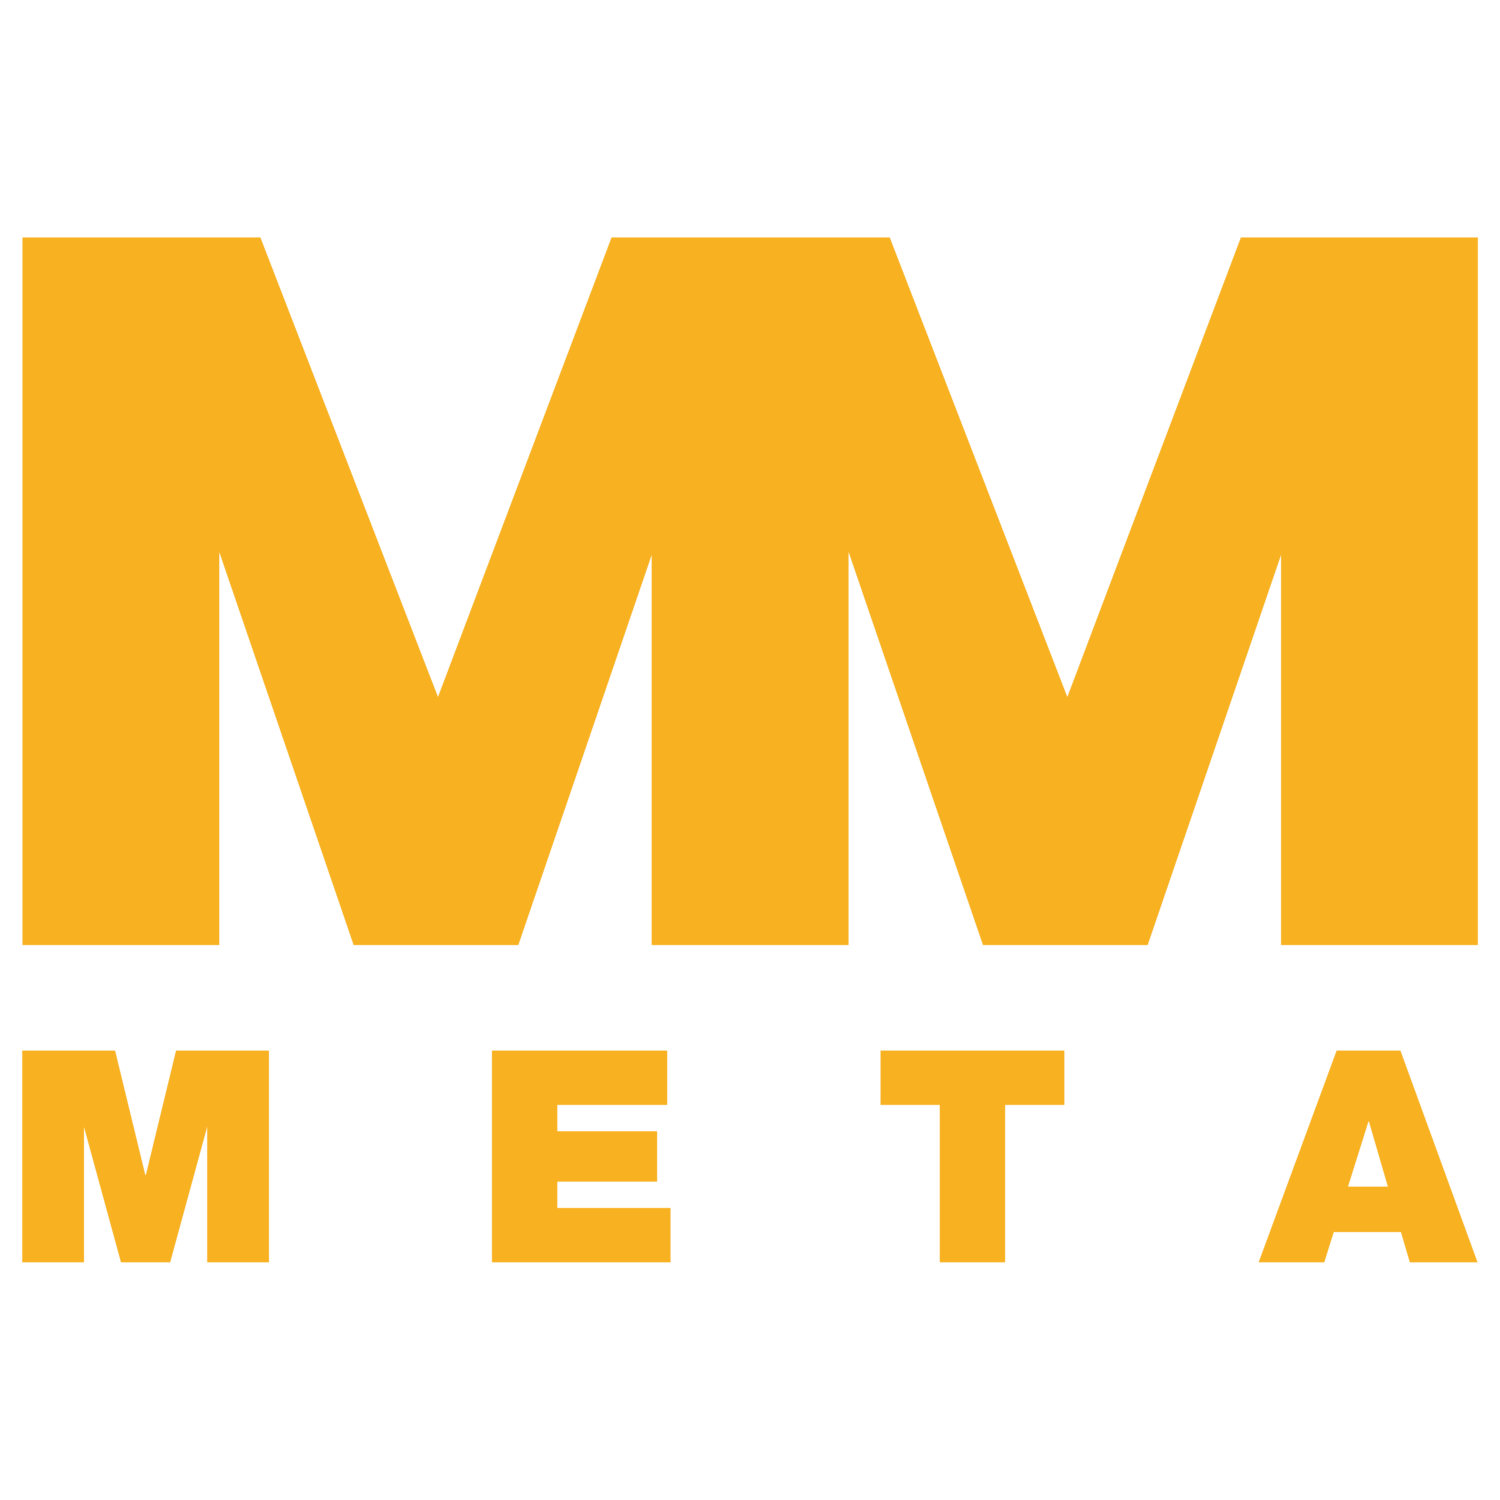 The Meta Group